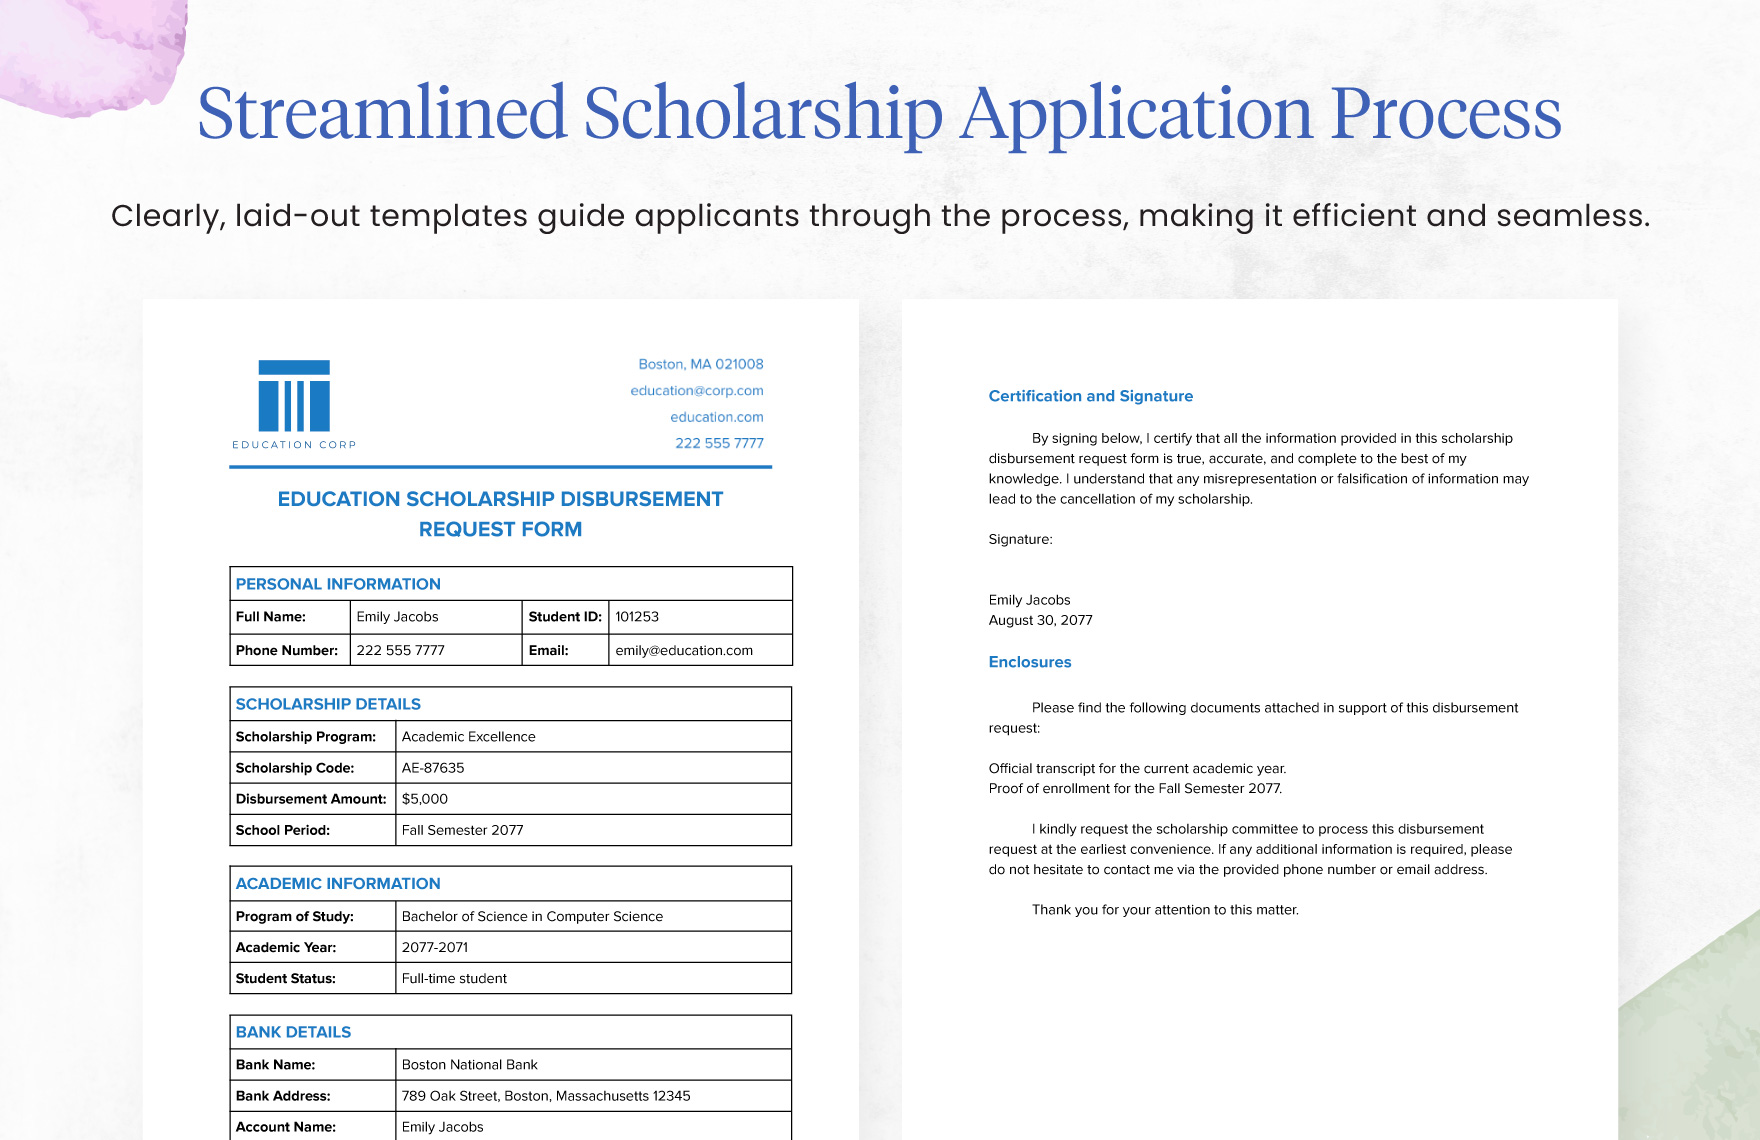 Education Scholarship Disbursement Request Form Template